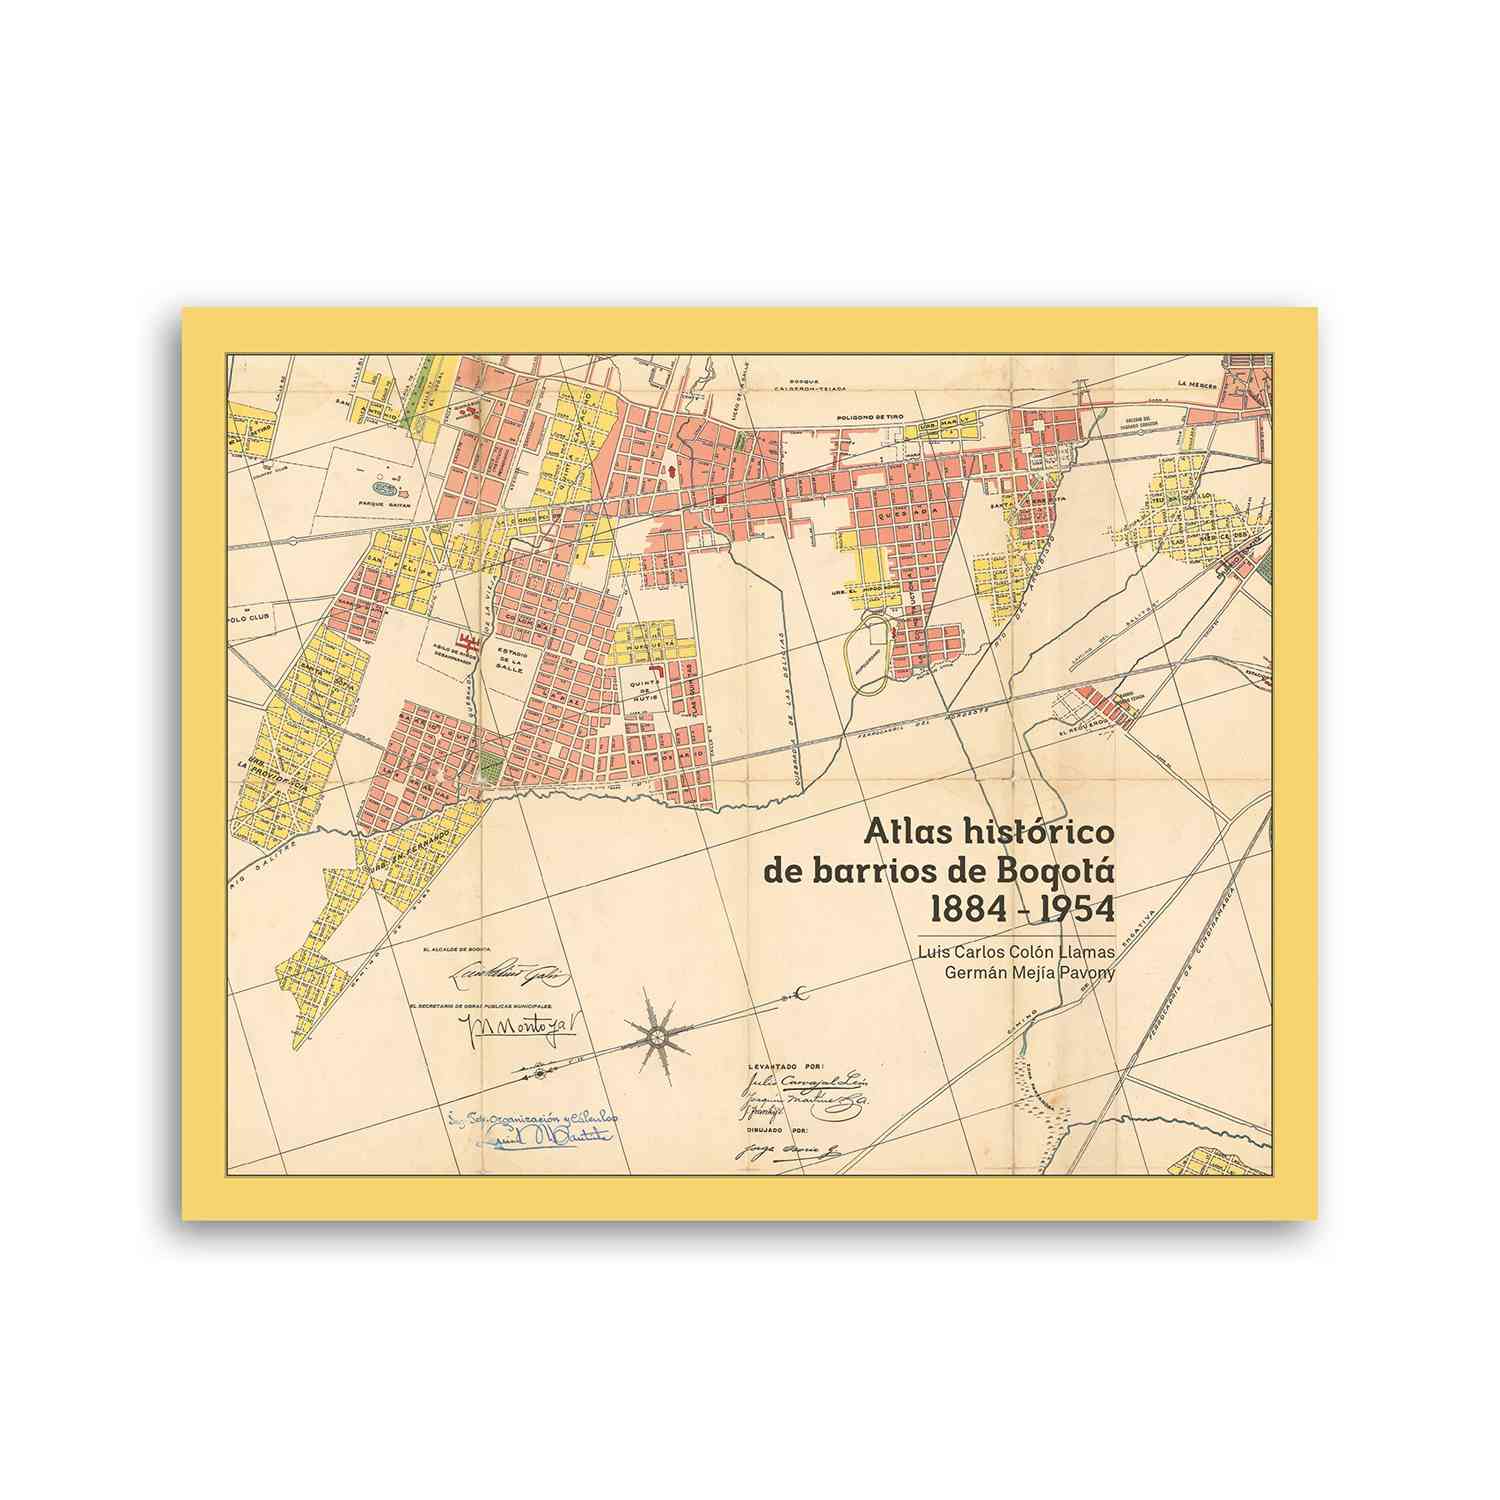 Atlas histórico de barrios de Bogotá